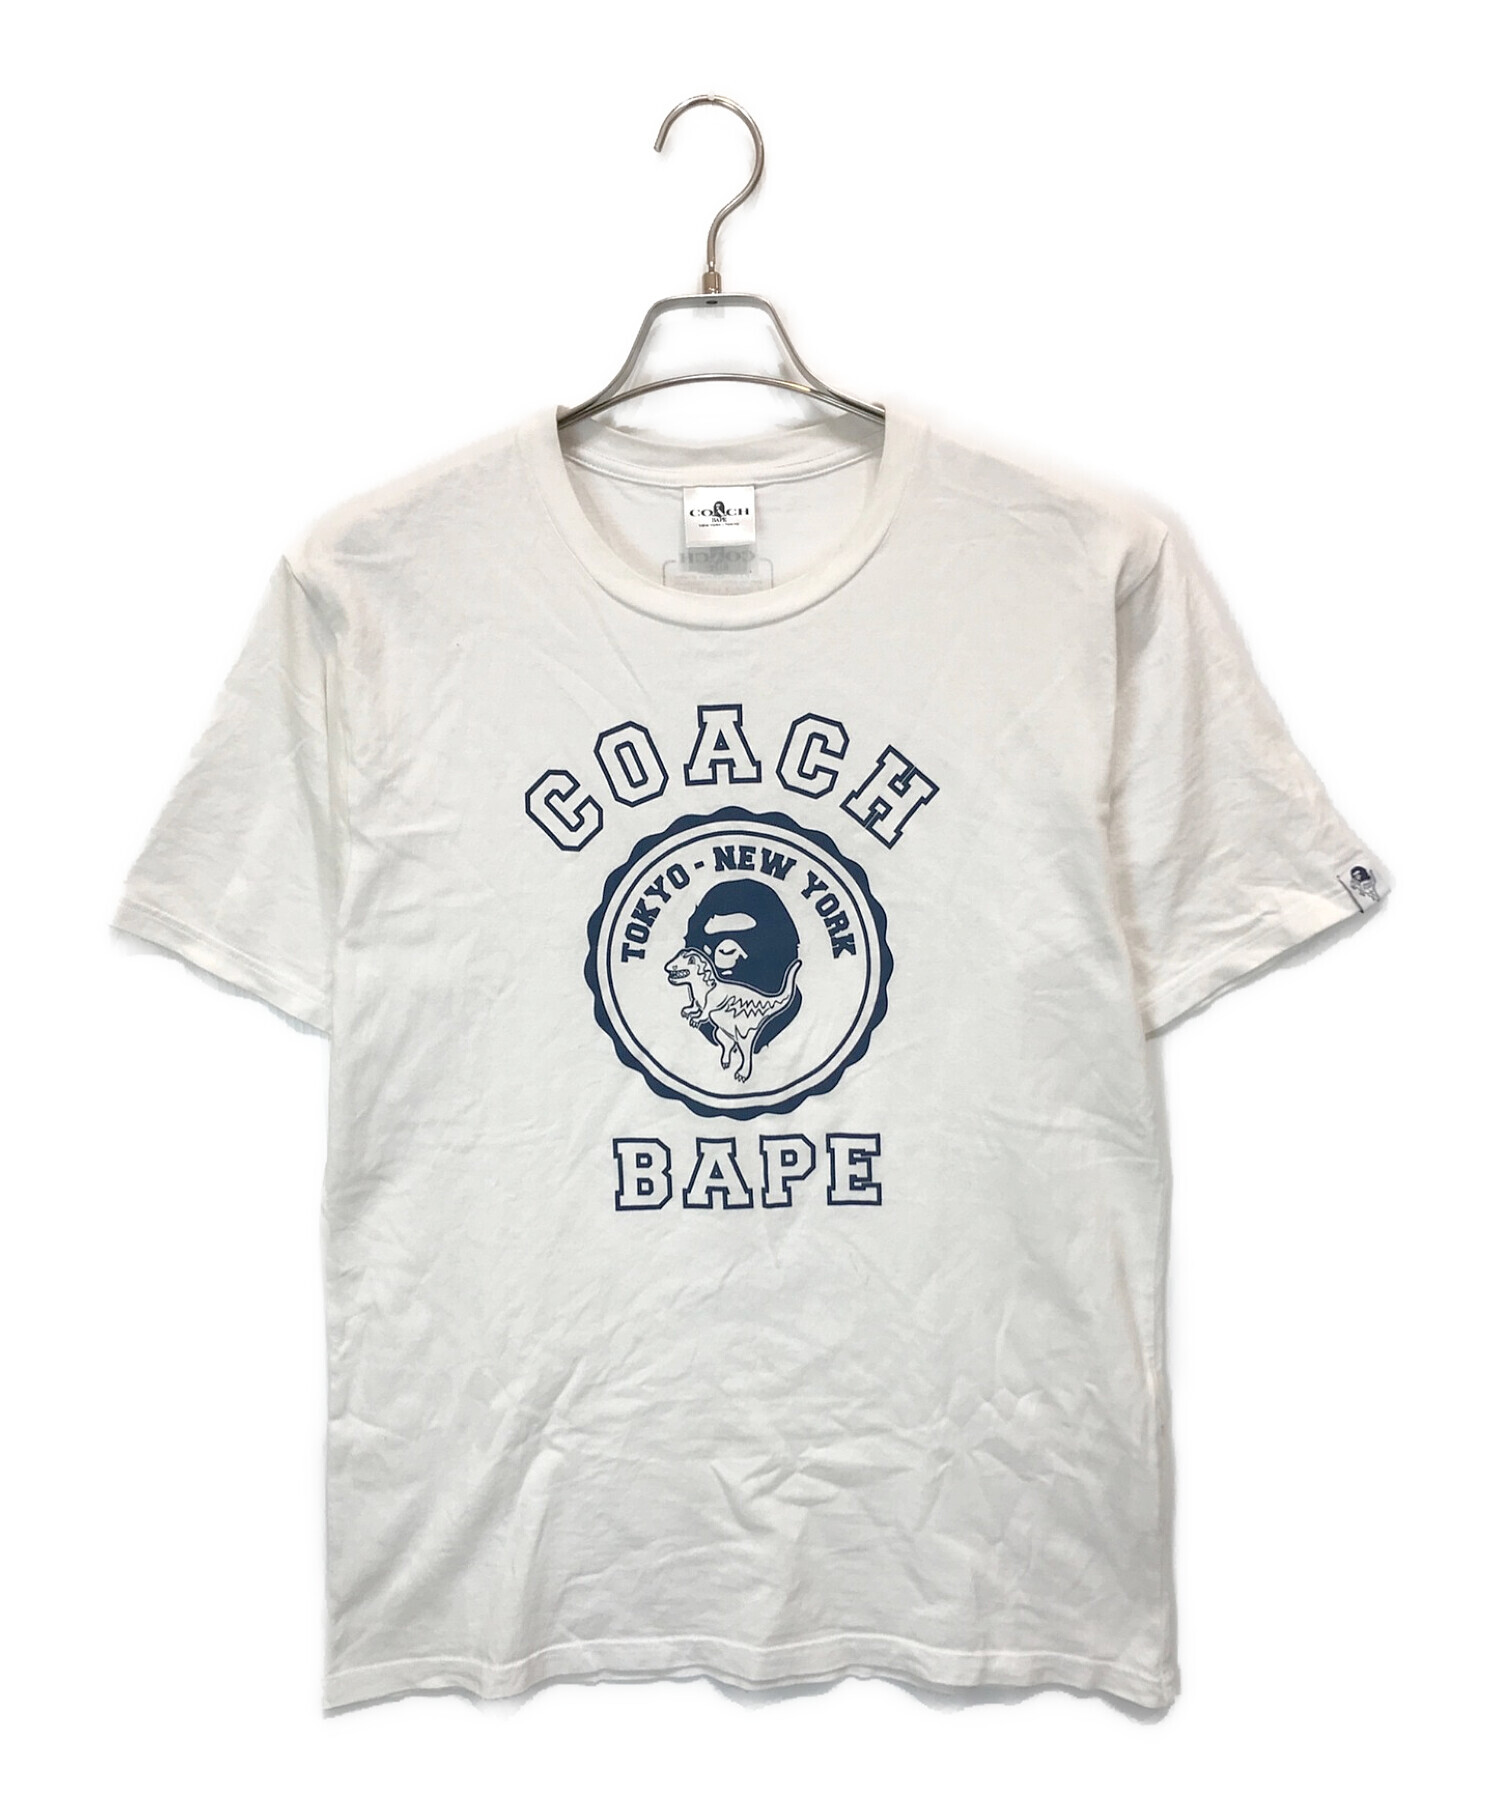 A BATHING APE (ア ベイシング エイプ) COACH (コーチ) カレッジプリントTシャツ ホワイト サイズ:L